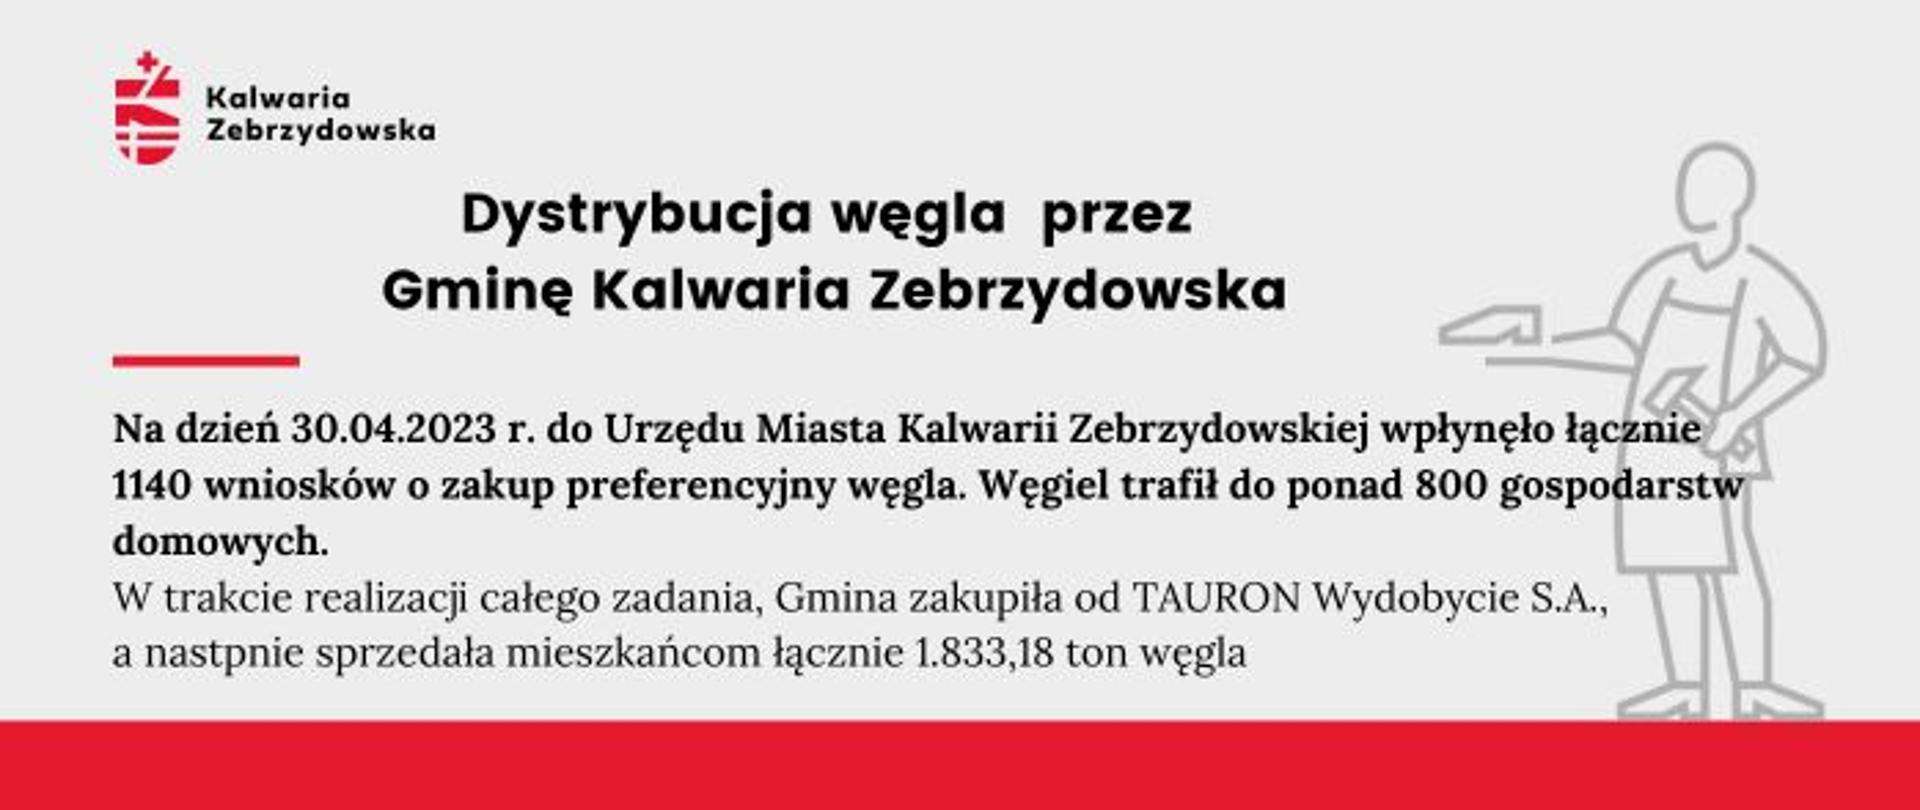 Plansza informacyjna - Dystrybucja węgla przez Gminę Kalwaria Zebrzydowska